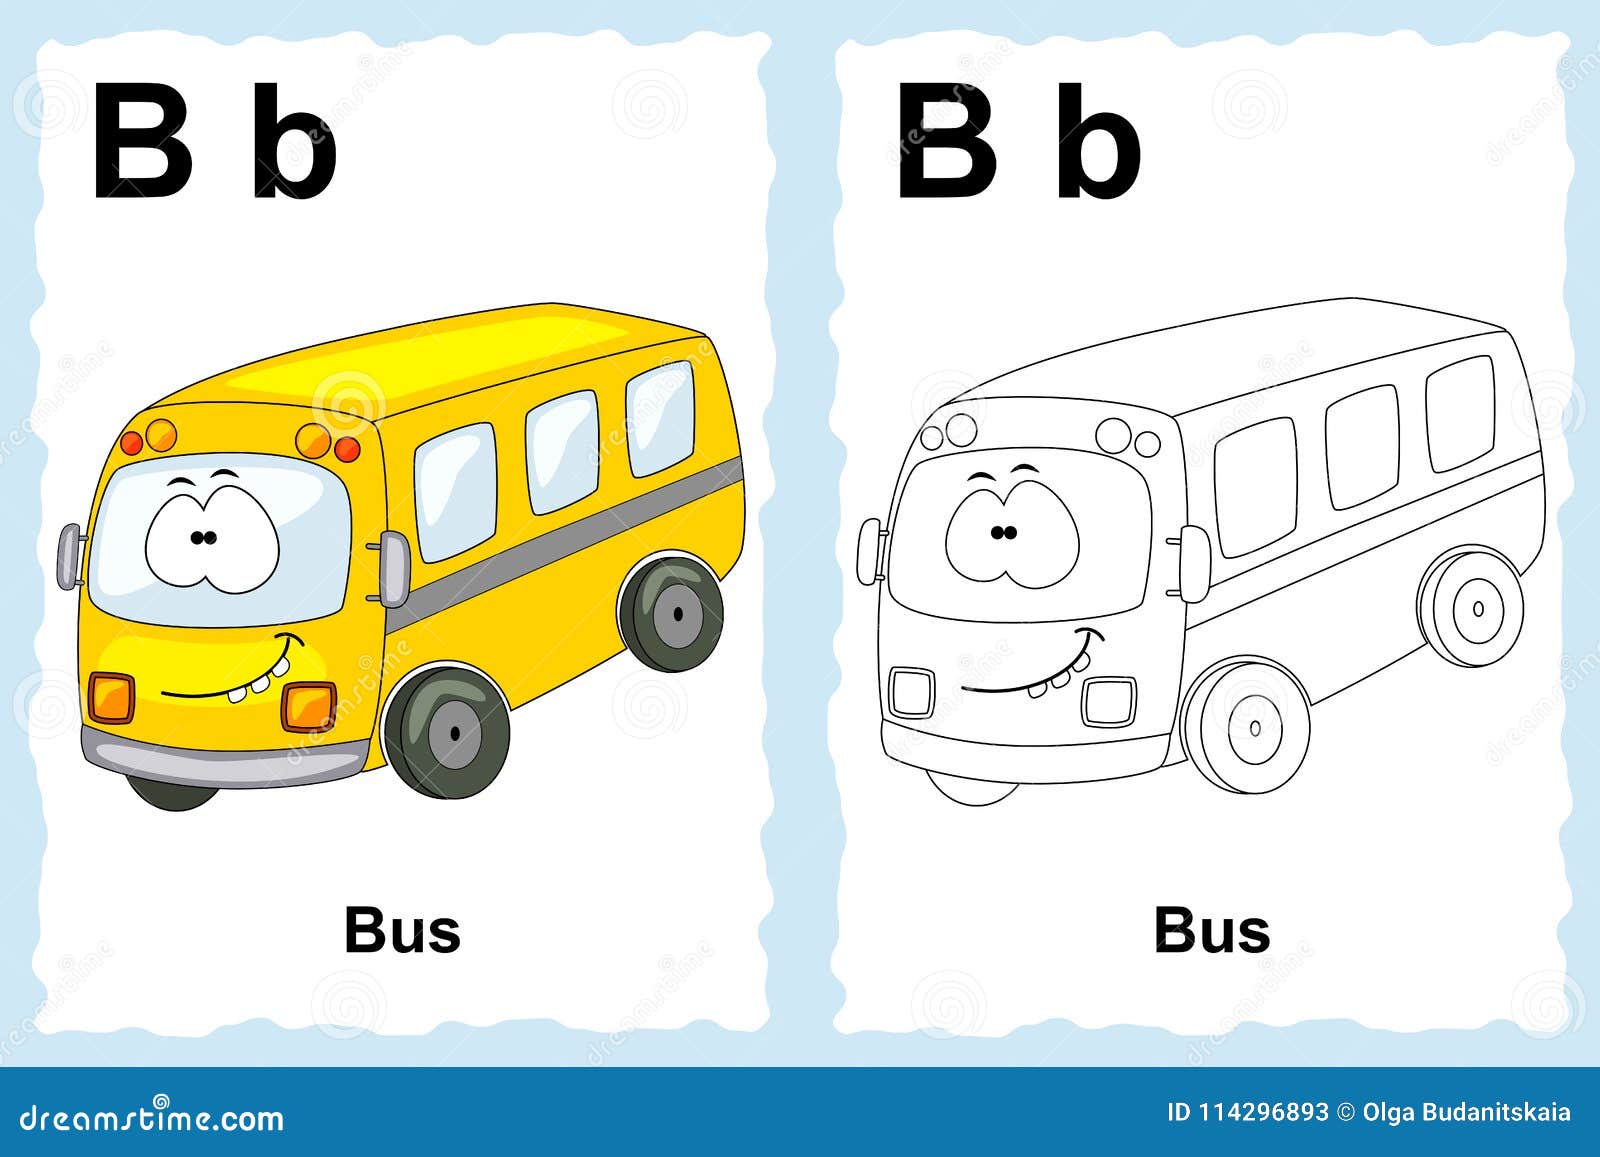 bus letter alphabet coloring vehicles outline clip vector